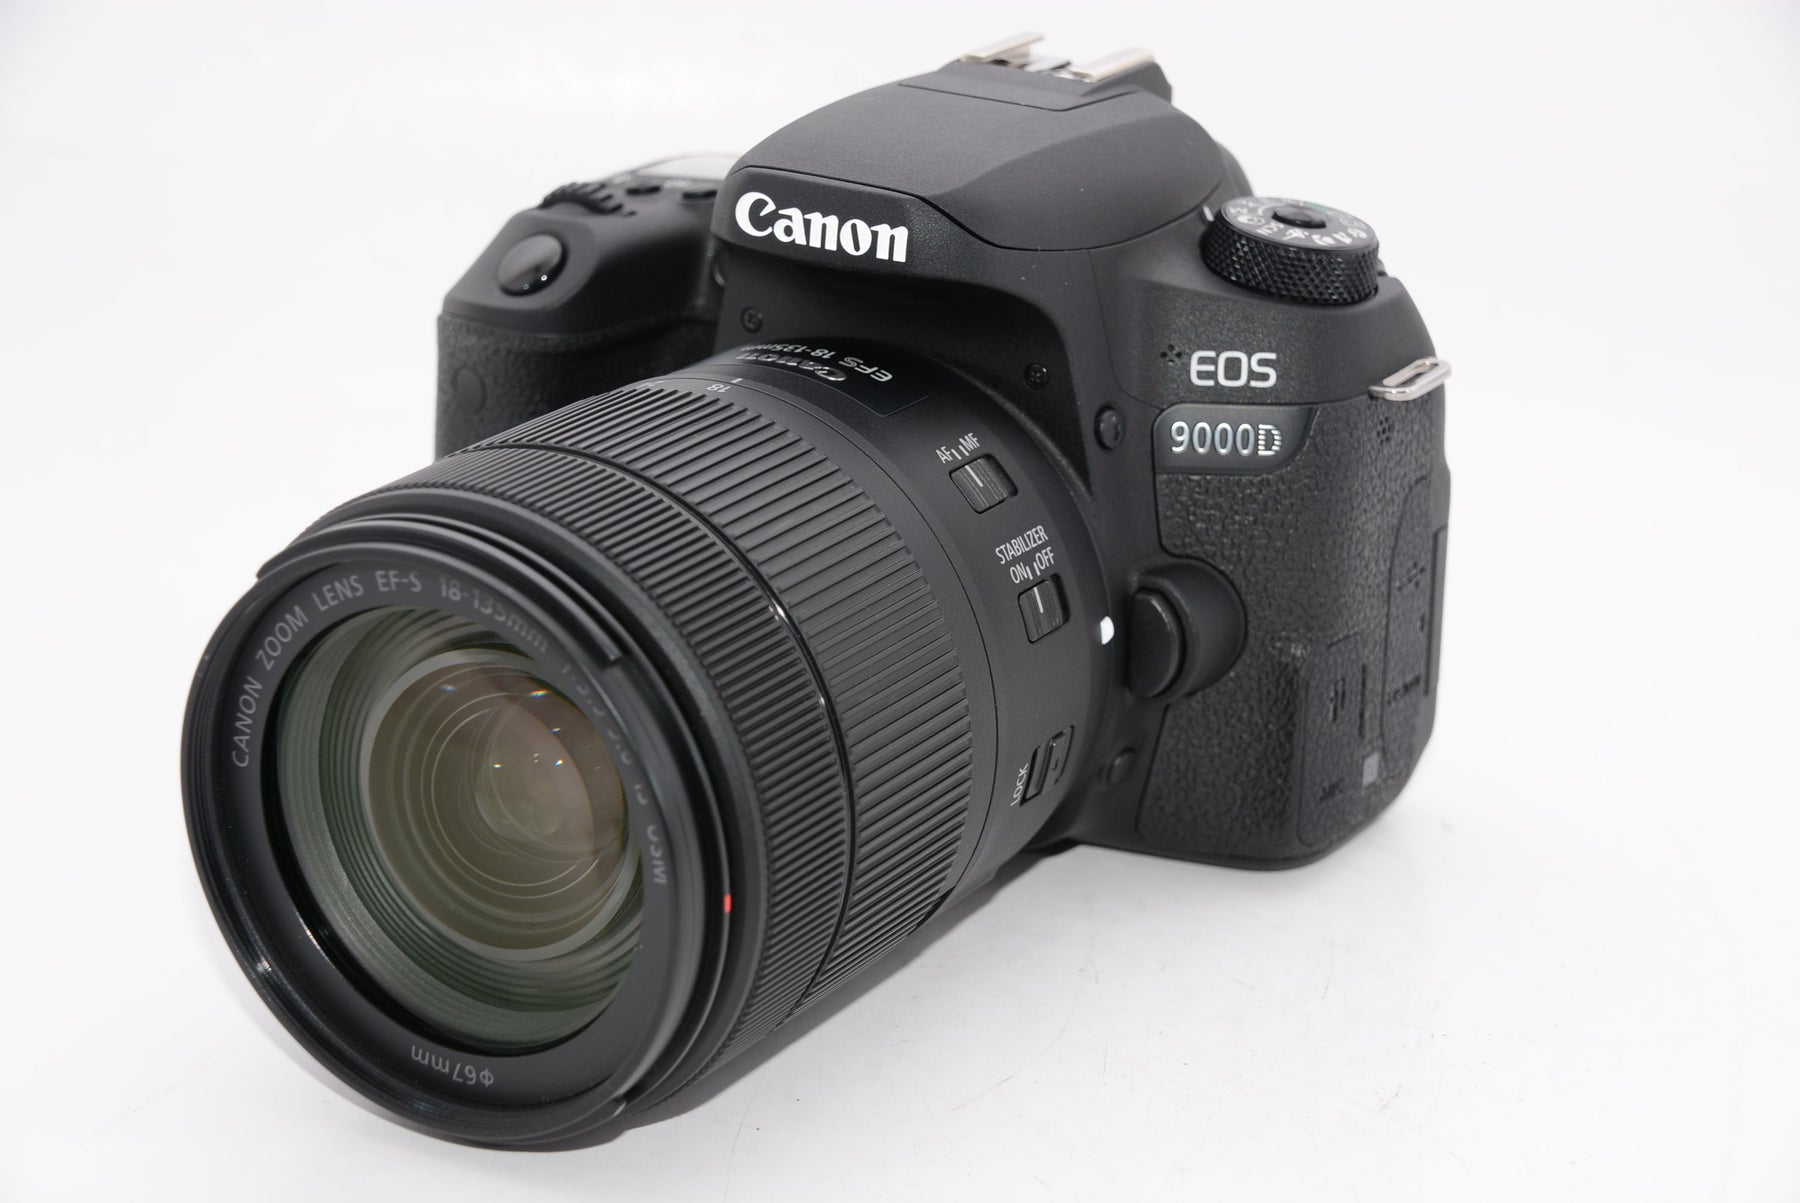 Canon デジタル一眼 EOS 9000D キット EF-S18-135mm